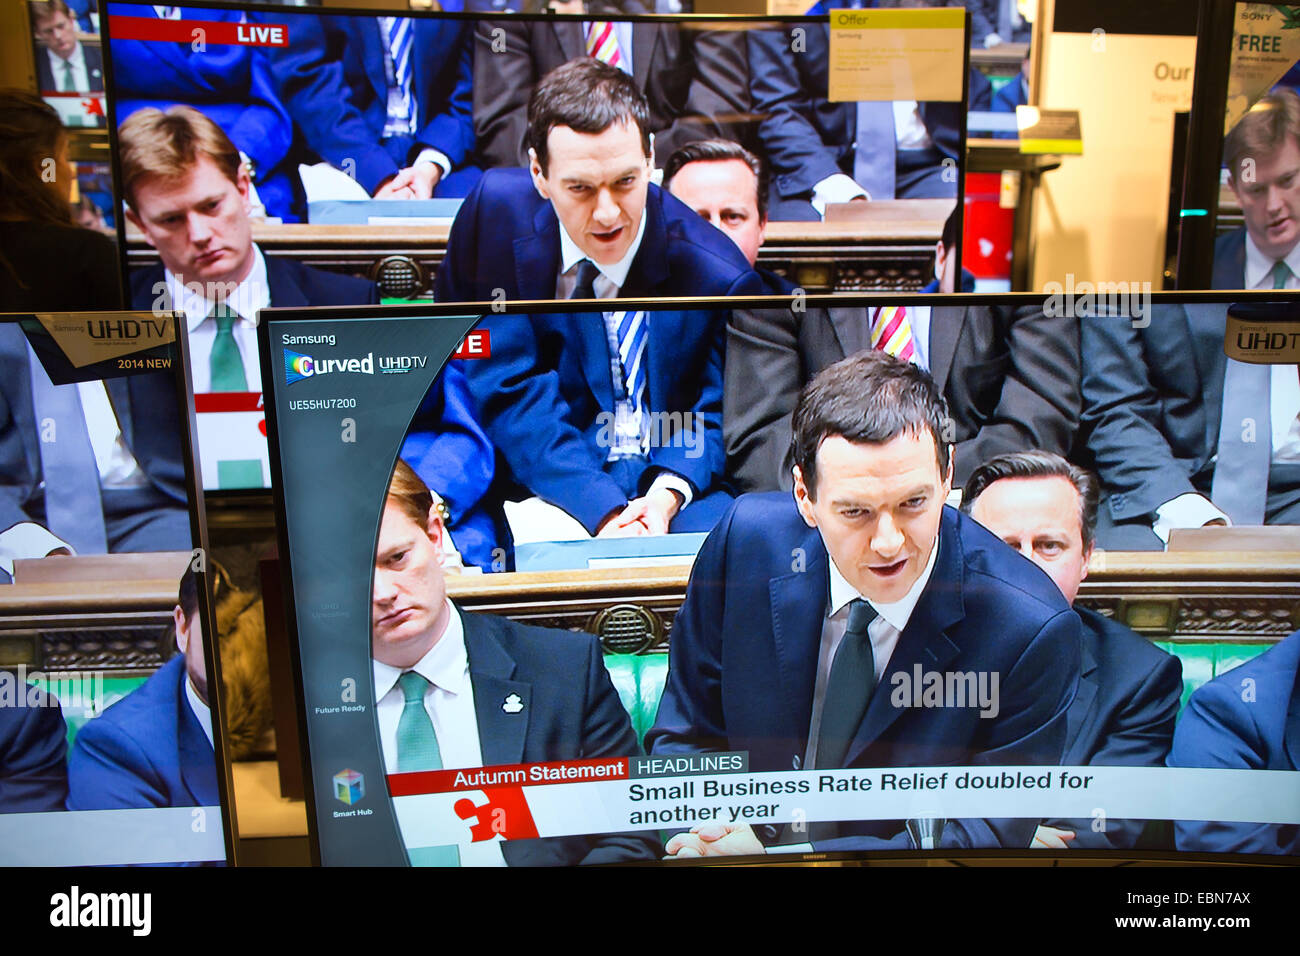 Declaración de otoño 03 de diciembre de 2014, Londres, Reino Unido foto muestra a George Osborne, Canciller del Exchequer Otoño pronuncia su declaración ante la Cámara de los Comunes se muestra en varias televisiones en el centro de Londres en un almacén. Foto de stock